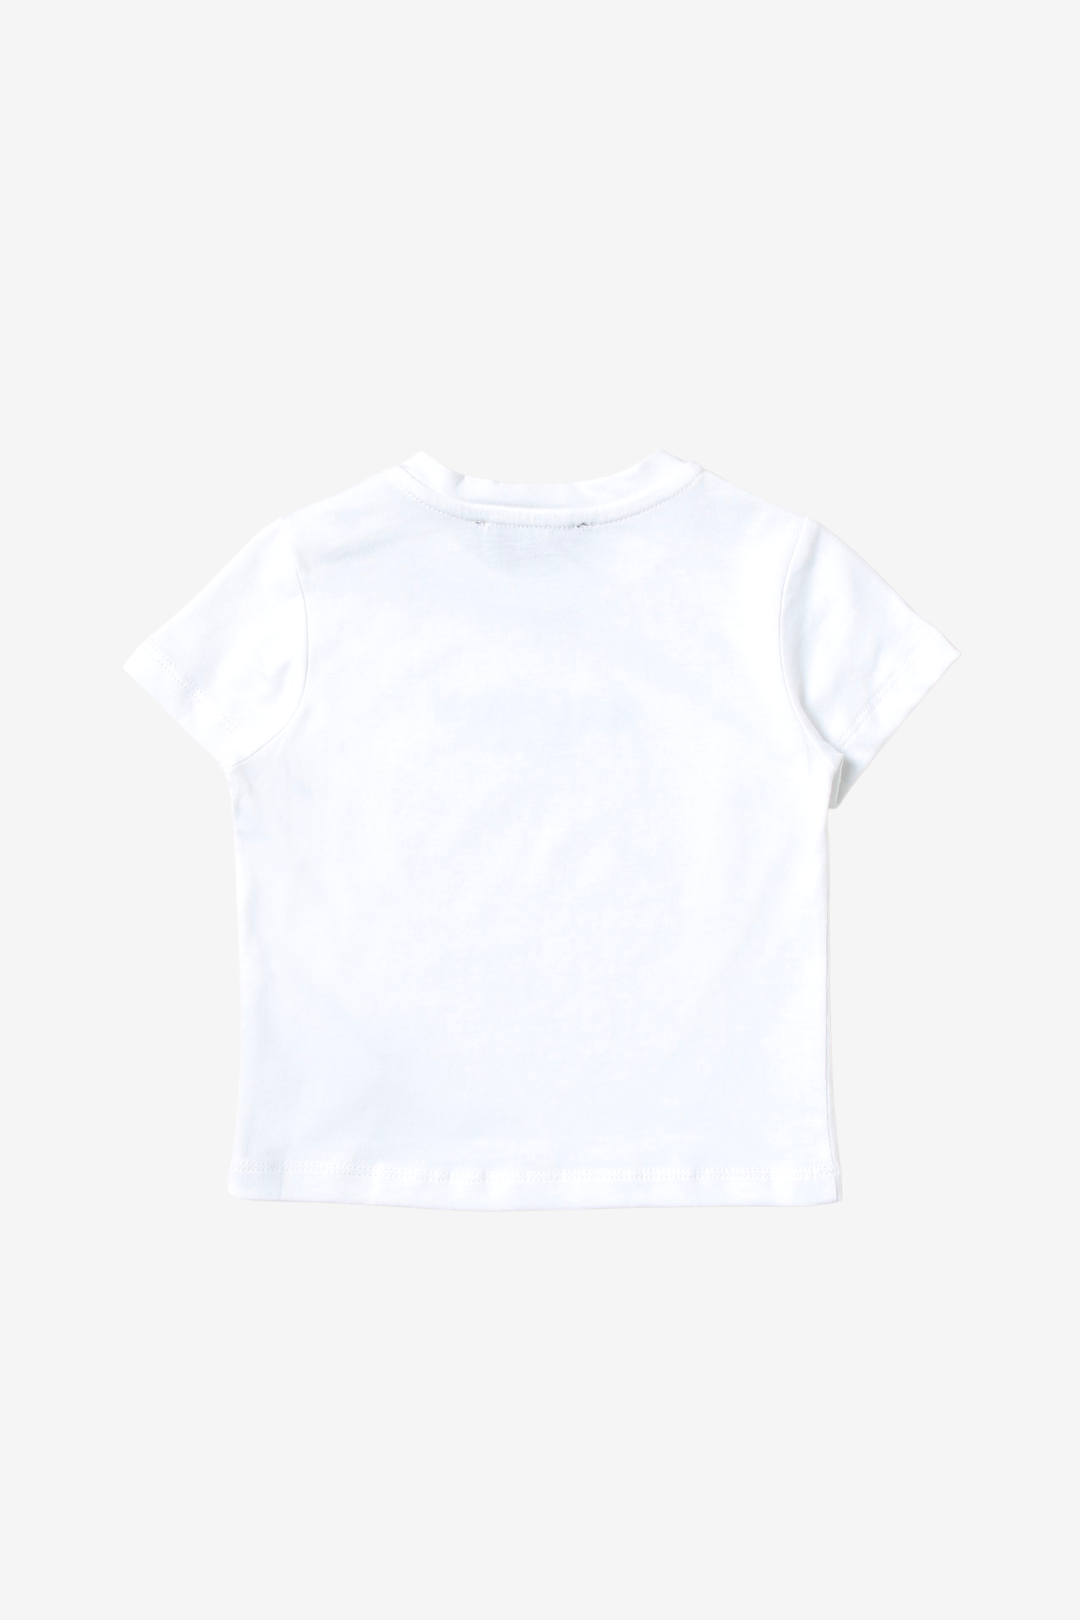 Baby T-Shirt with Velvet Balmain Logo